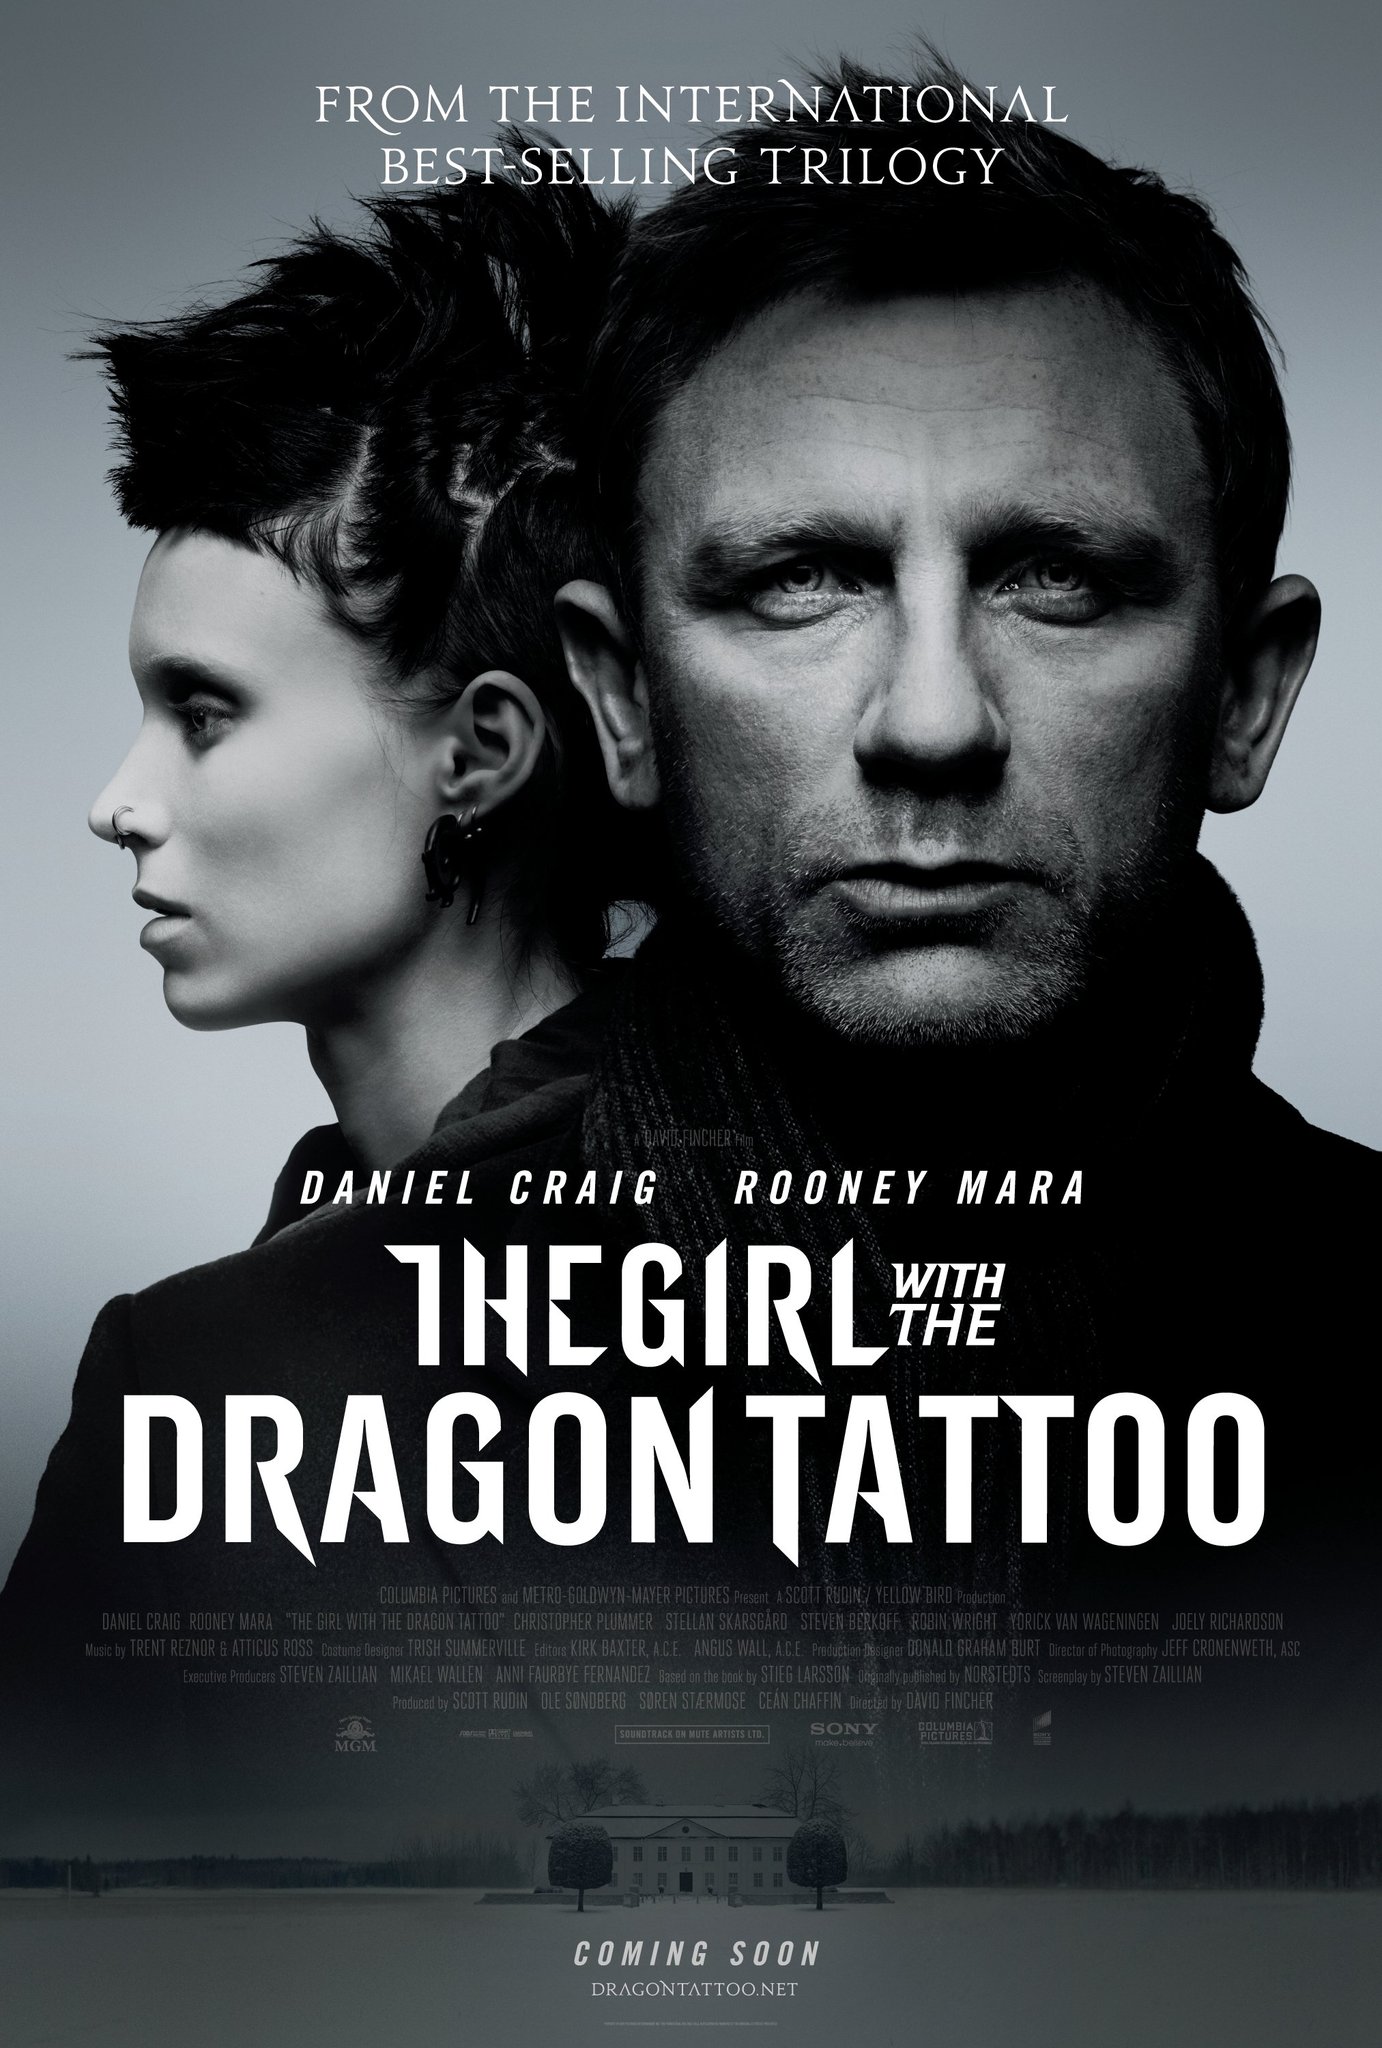 ดูหนังออนไลน์ฟรี The Girl with the Dragon Tattoo 2011 เว็บดูหนังใหม่ออนไลน์ฟรี